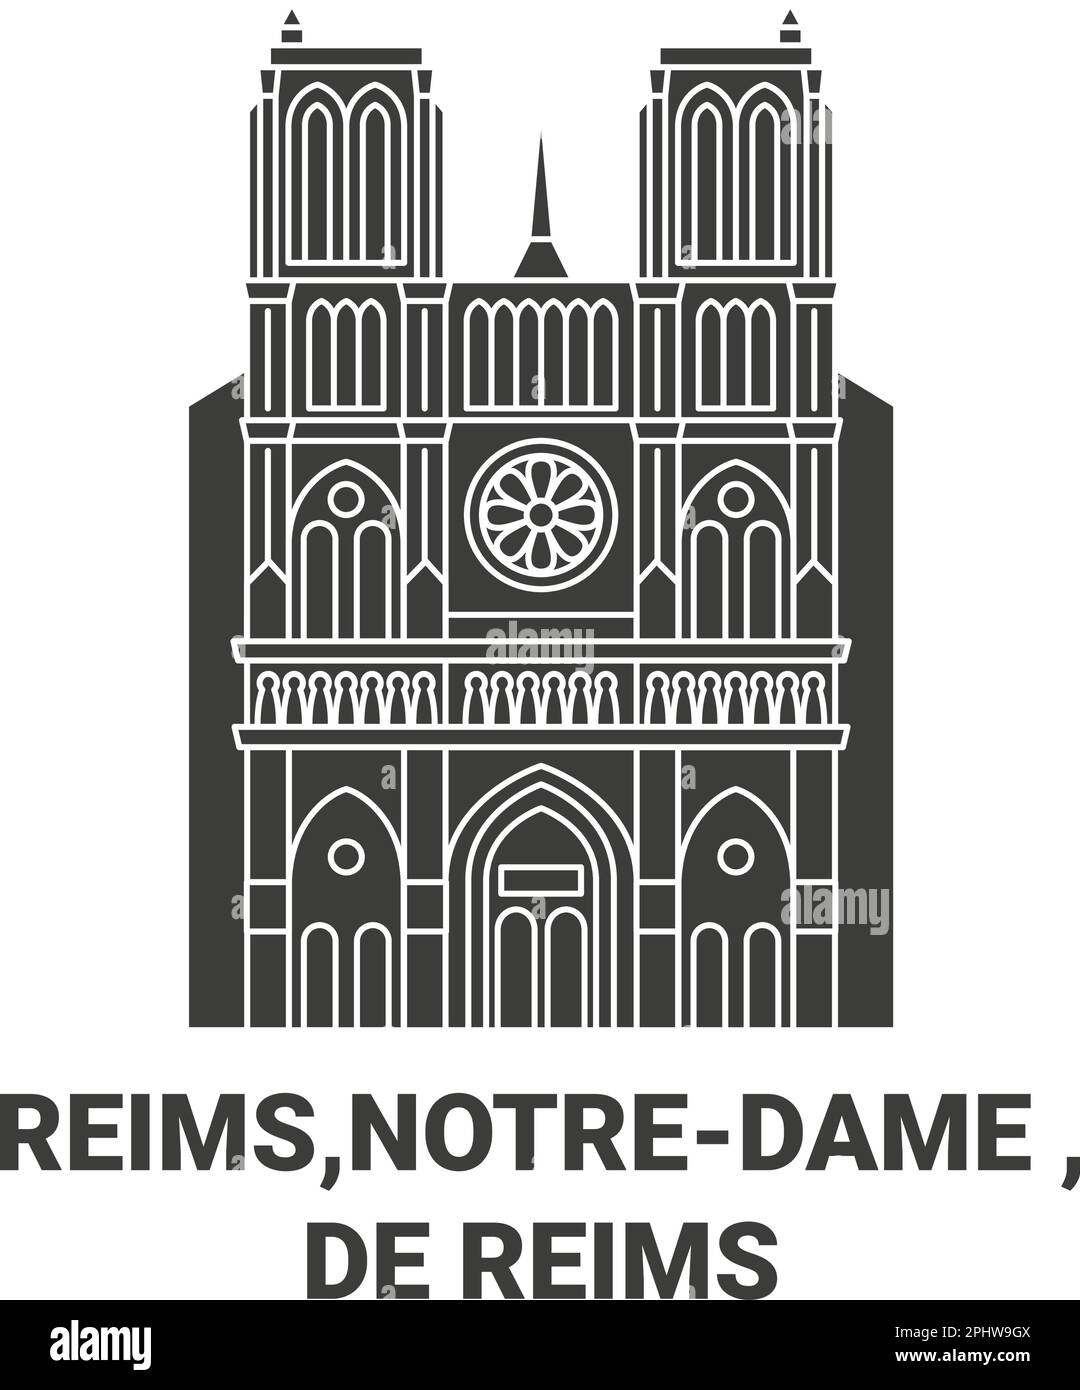 France, Reims,Notredame , De Reims travel landmark vector illustration Stock Vector